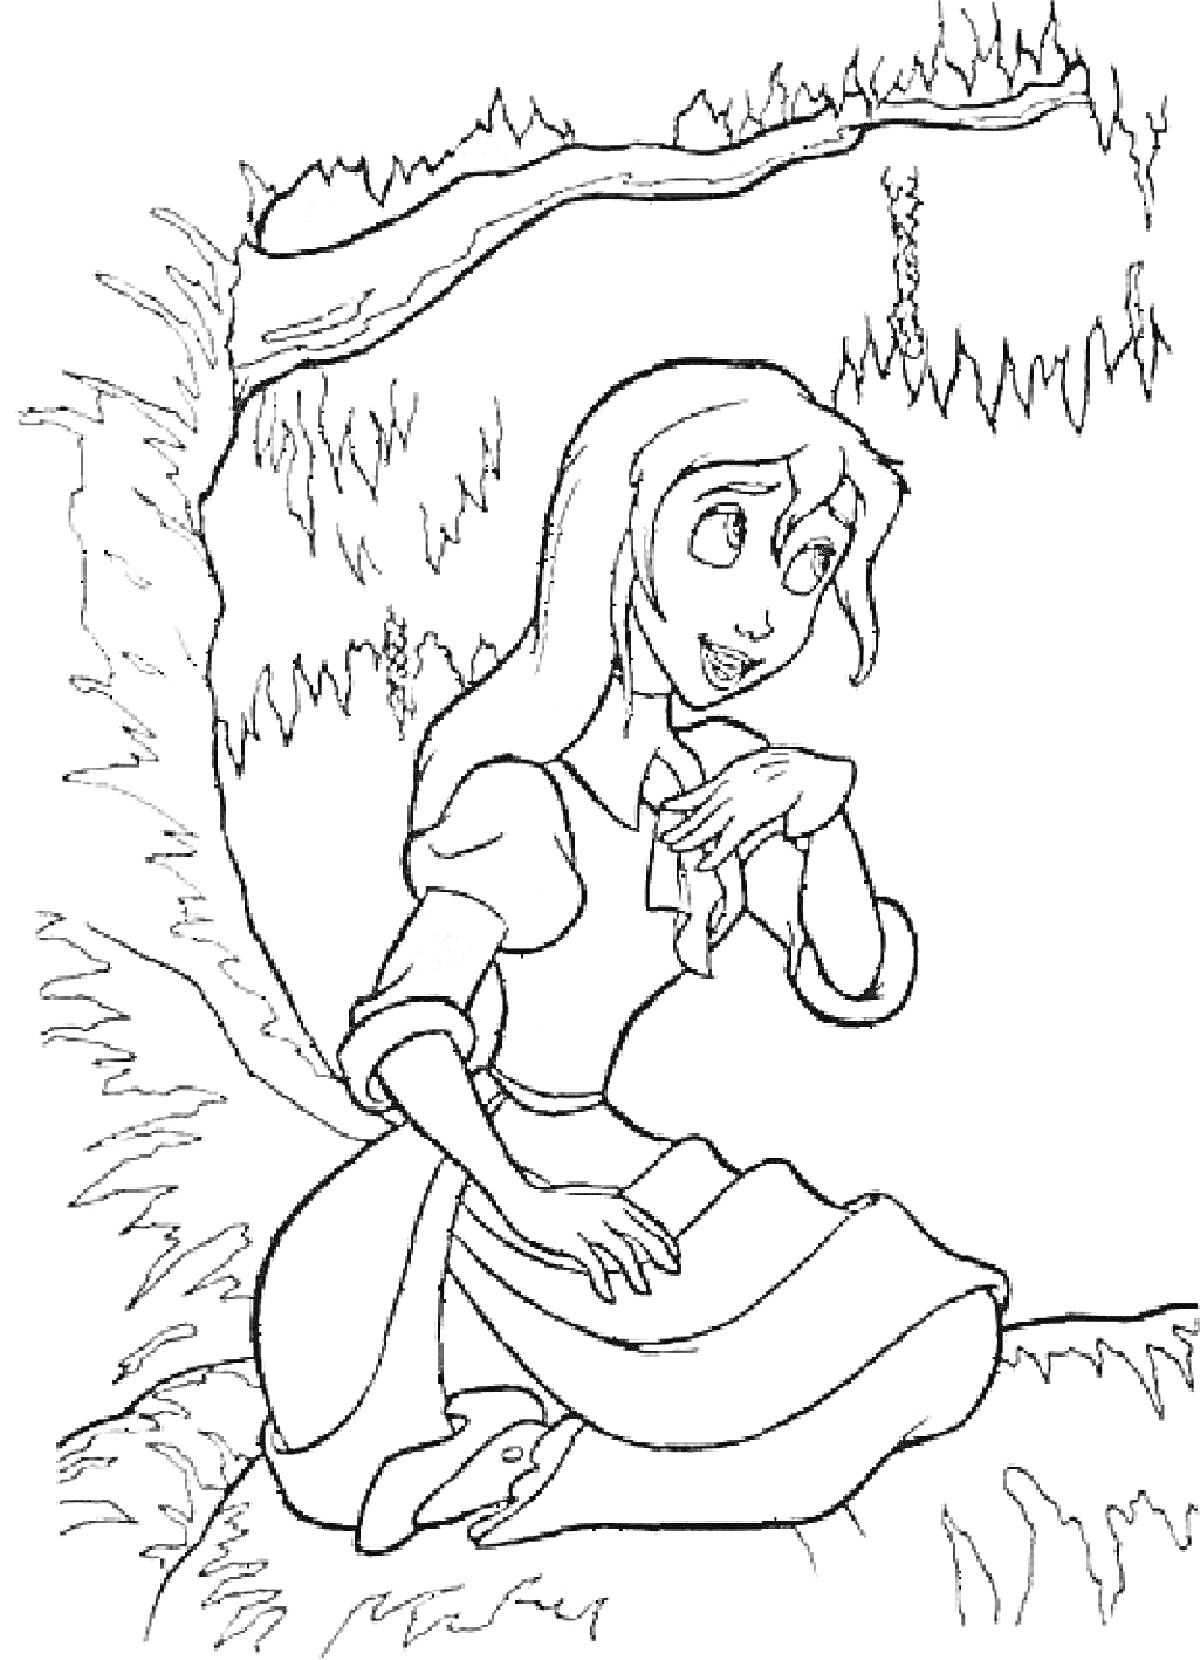 Джейн Портер сидит на ветке дерева в джунглях